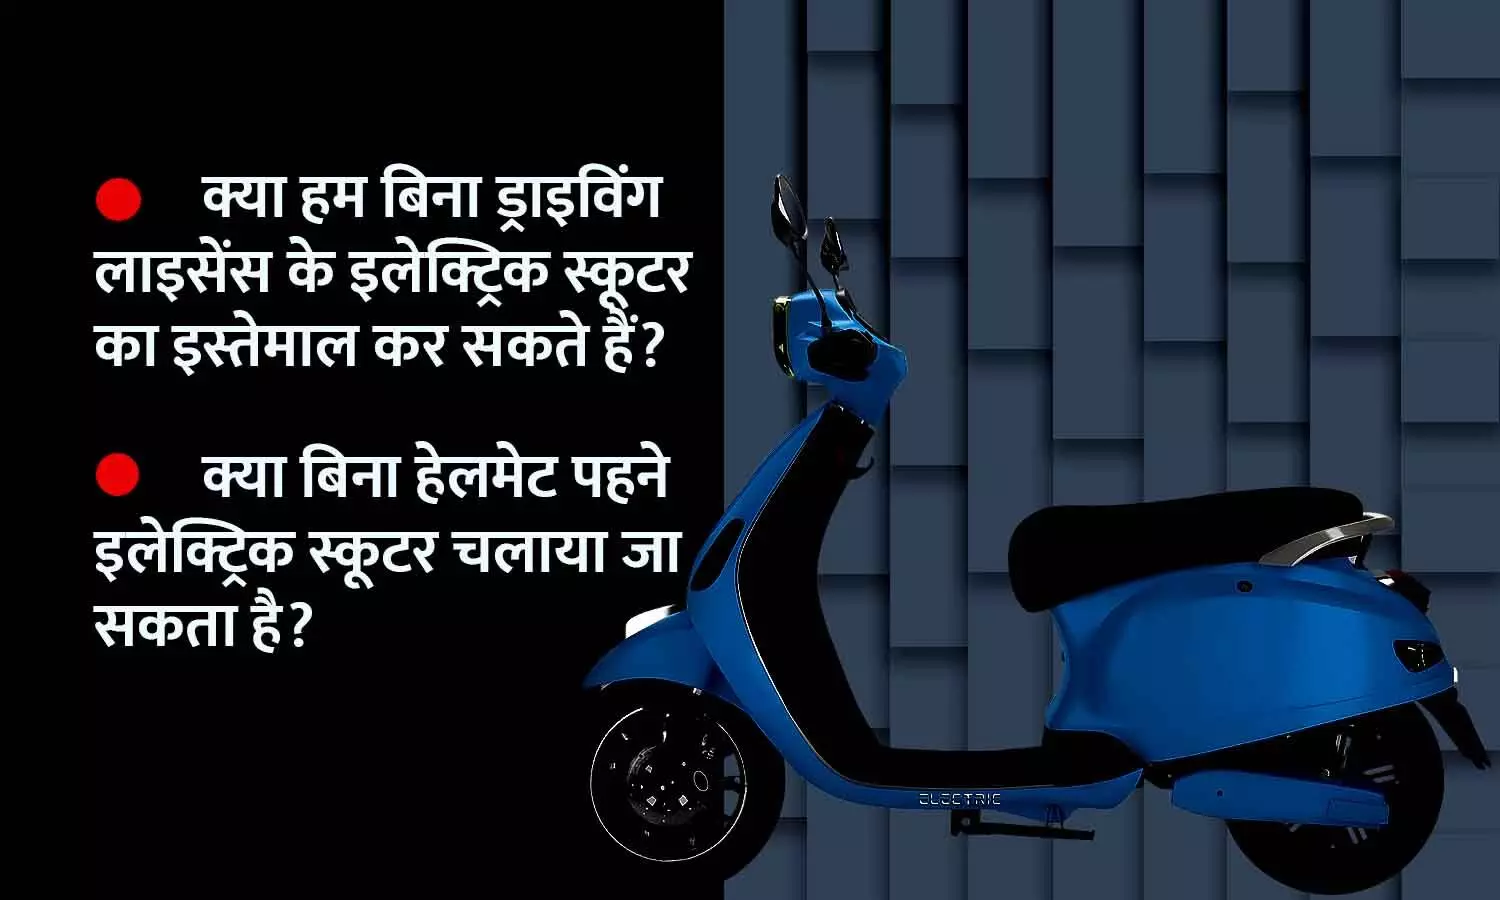 क्या भारत में बिना ड्राइविंग लाइसेंस, रजिस्ट्रेशन के इलेक्ट्रिक स्कूटर चला सकते हैं? जानिए EV के लिए RTO Rule...